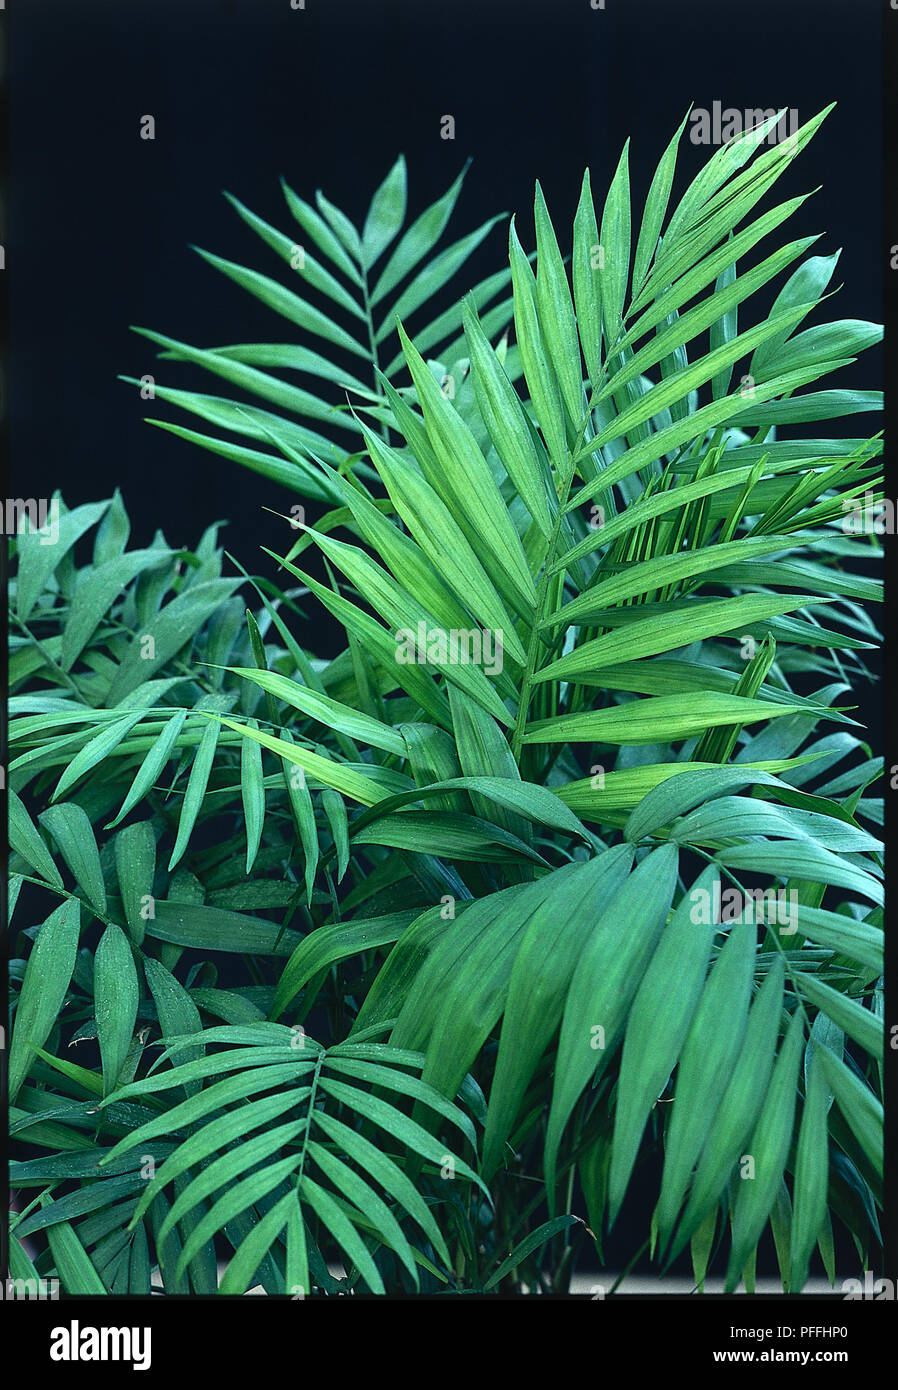 Nahaufnahme der Feder-geformte Blätter von vielen glänzenden Prospekten der immergrünen, schlanke Palm Chamaedorea elegans Syn. Neanthe Bella (Zwerg Berg Palm, Parlor Palm). Stockfoto